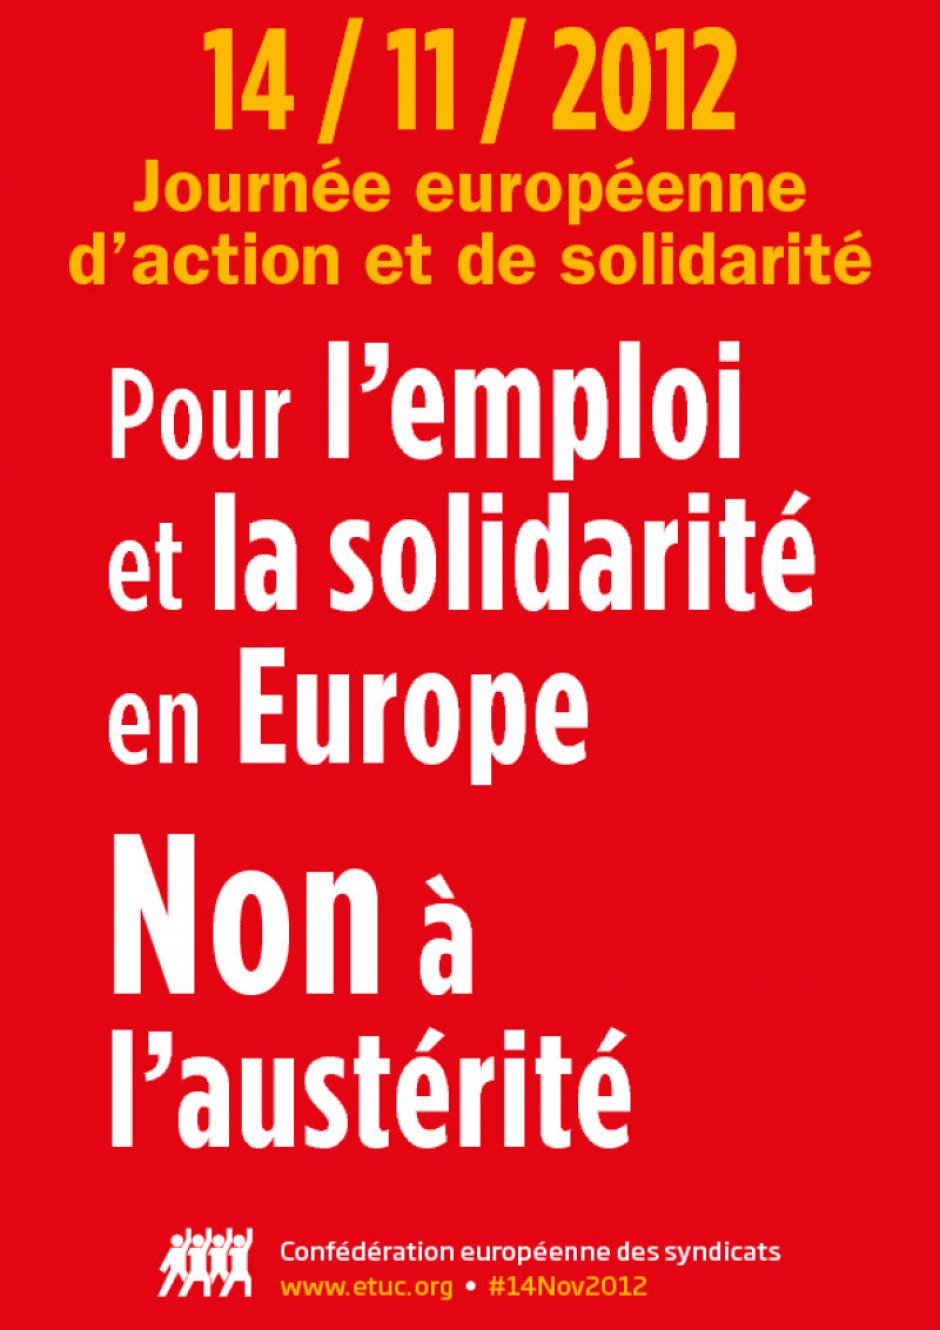 14 novembre, Montataire - Confédération européenne des syndicats-Journée européenne d'action et de solidarité